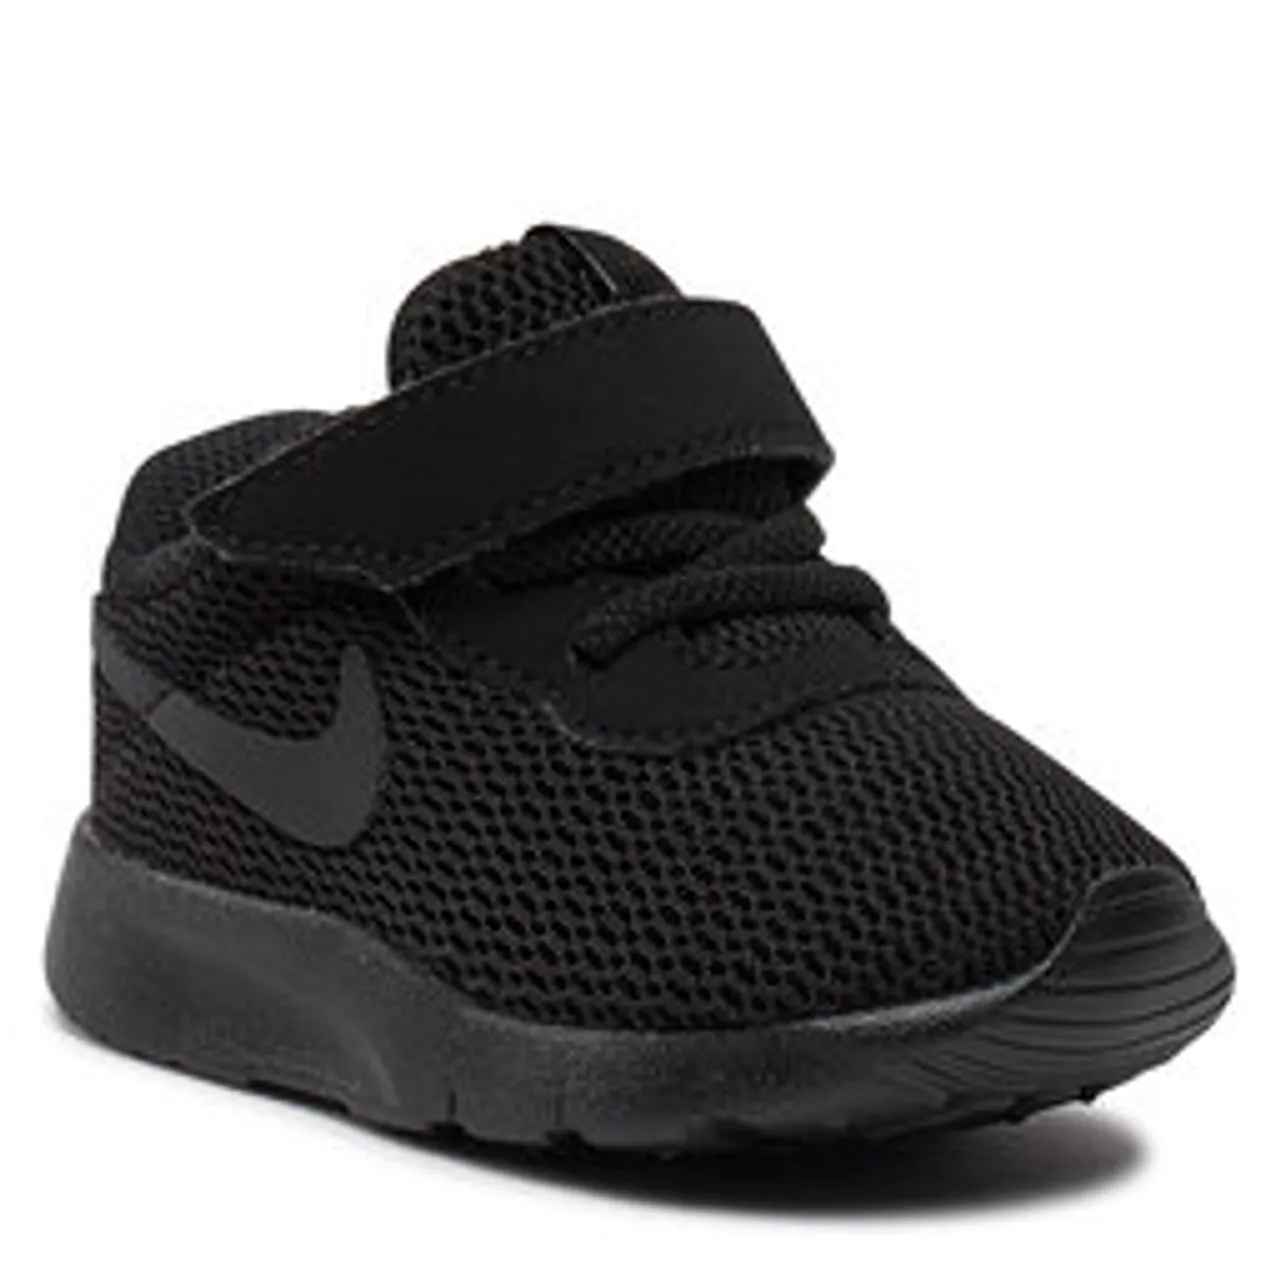 Sneakers Nike Tanjun (TDV) 818383 001 Schwarz